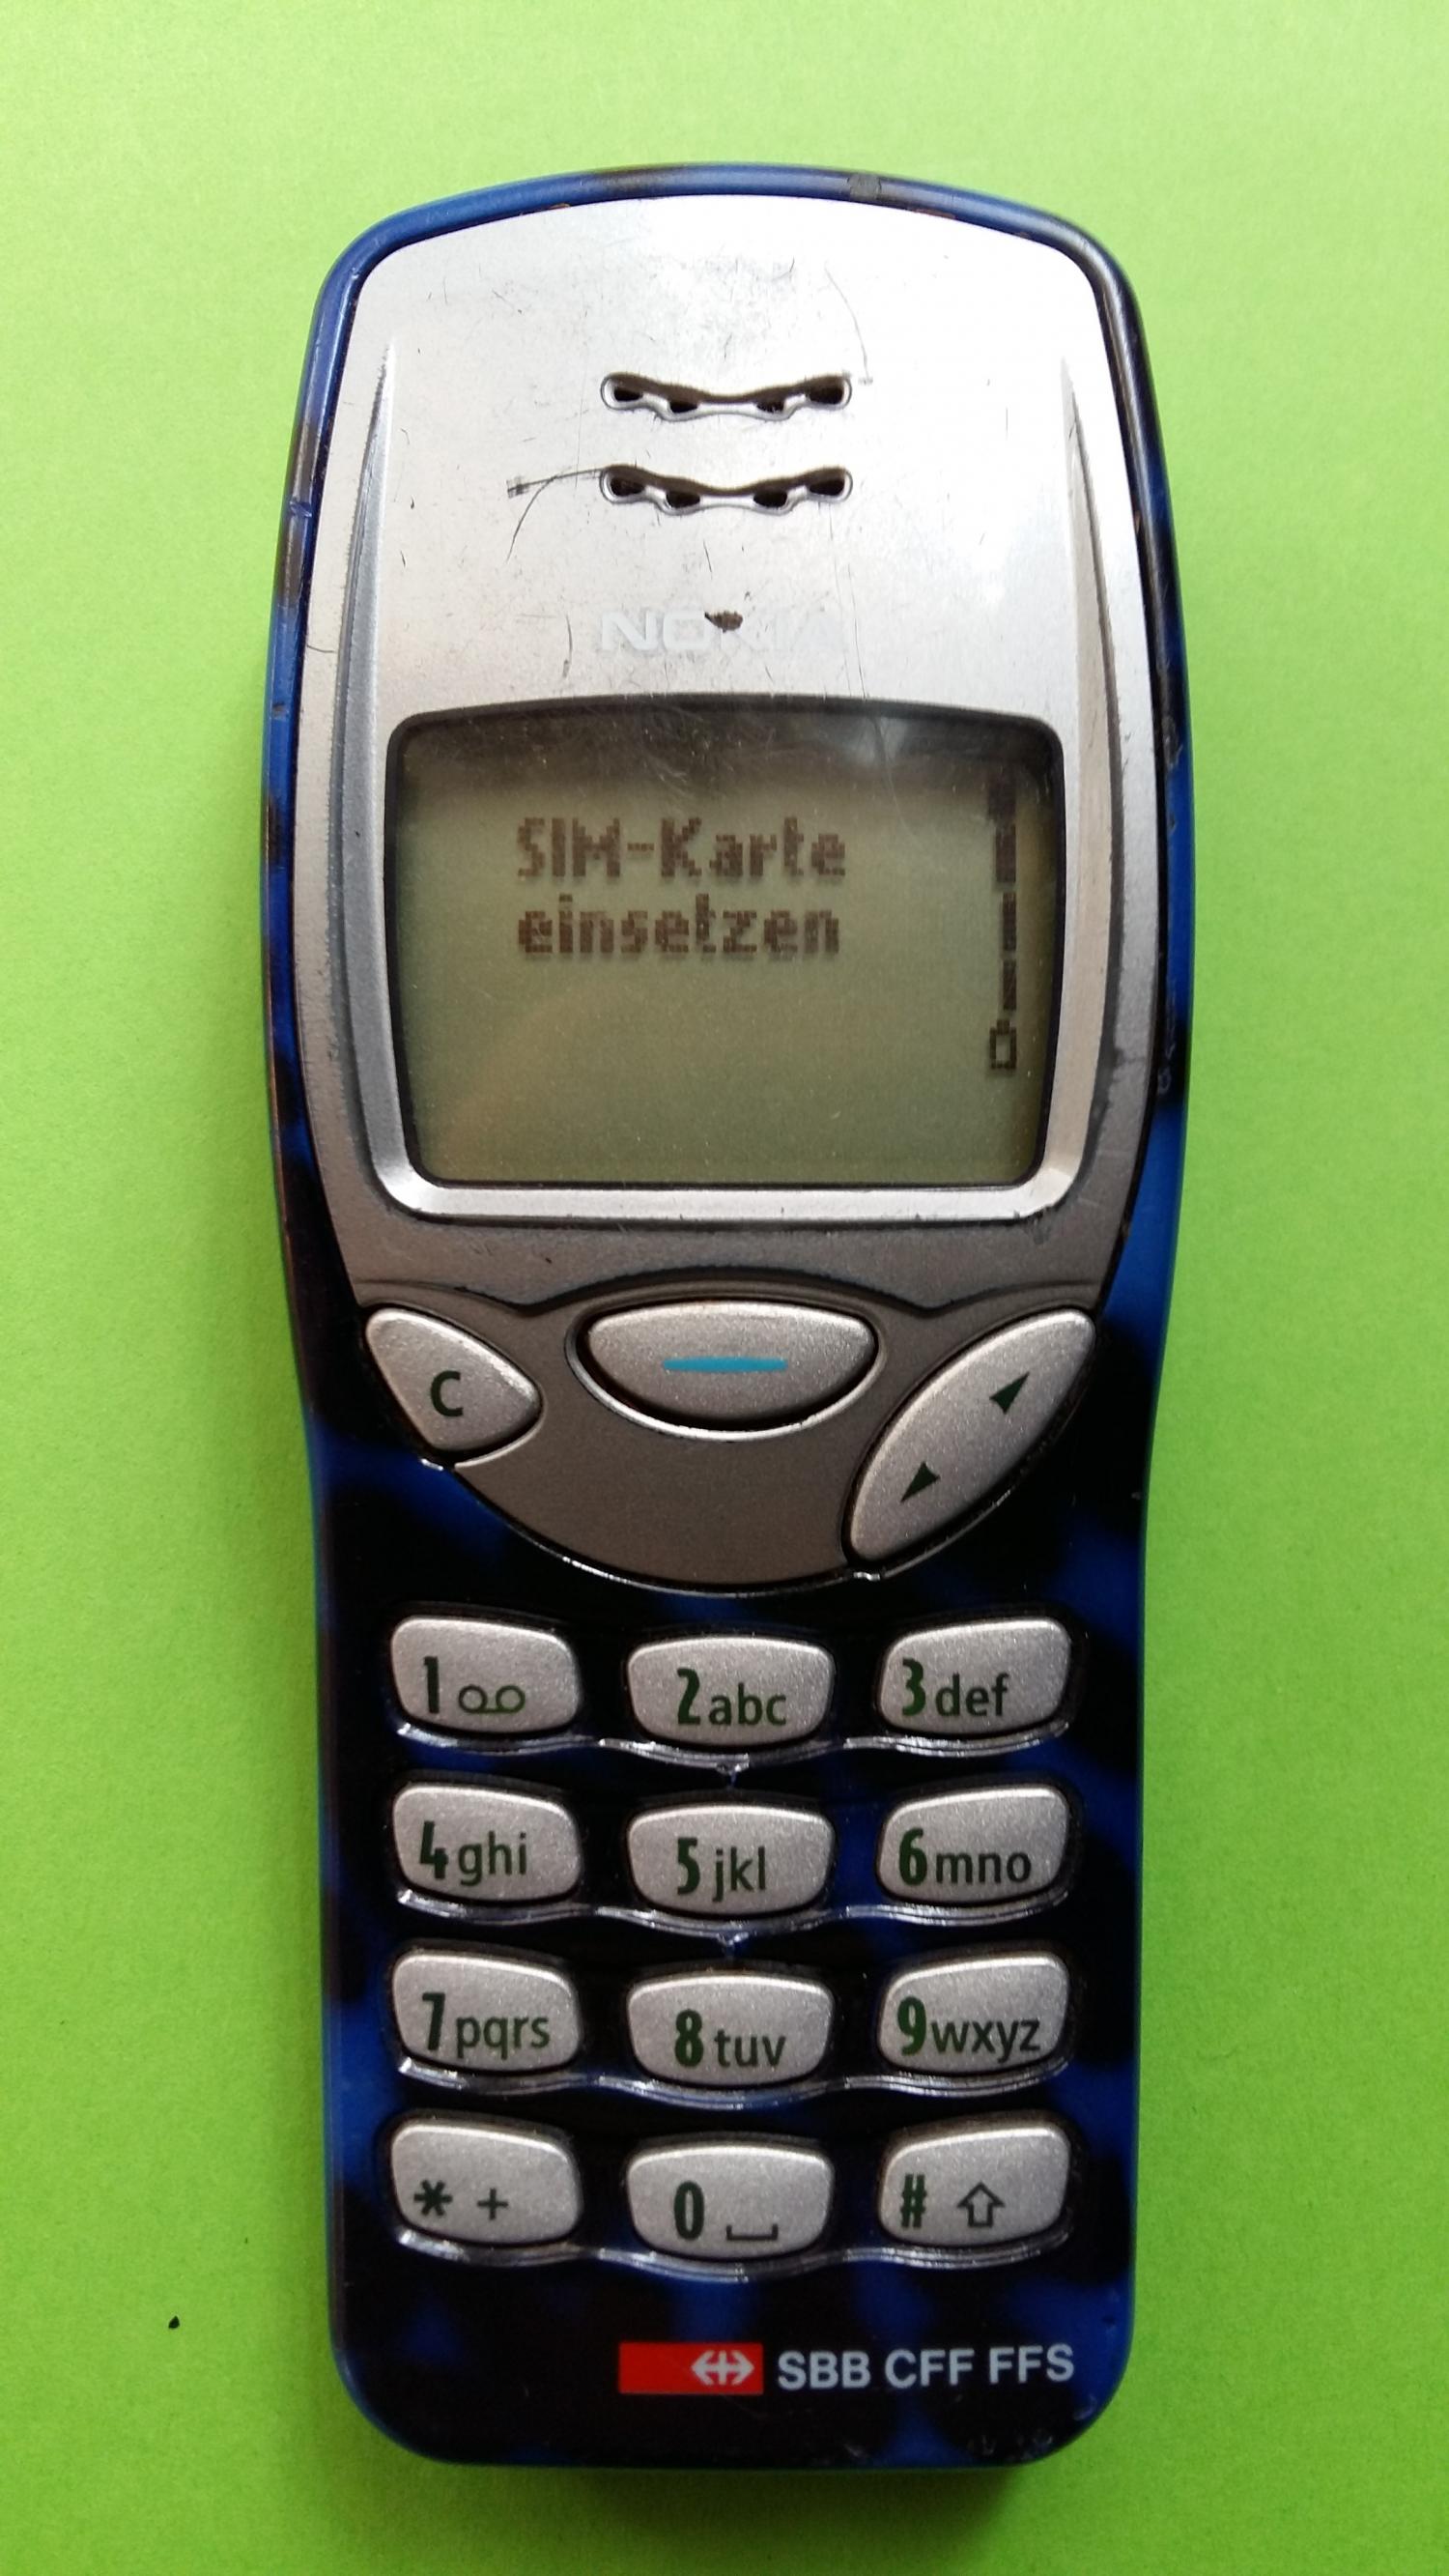 image-7305654-Nokia 3210 (12)1.jpg